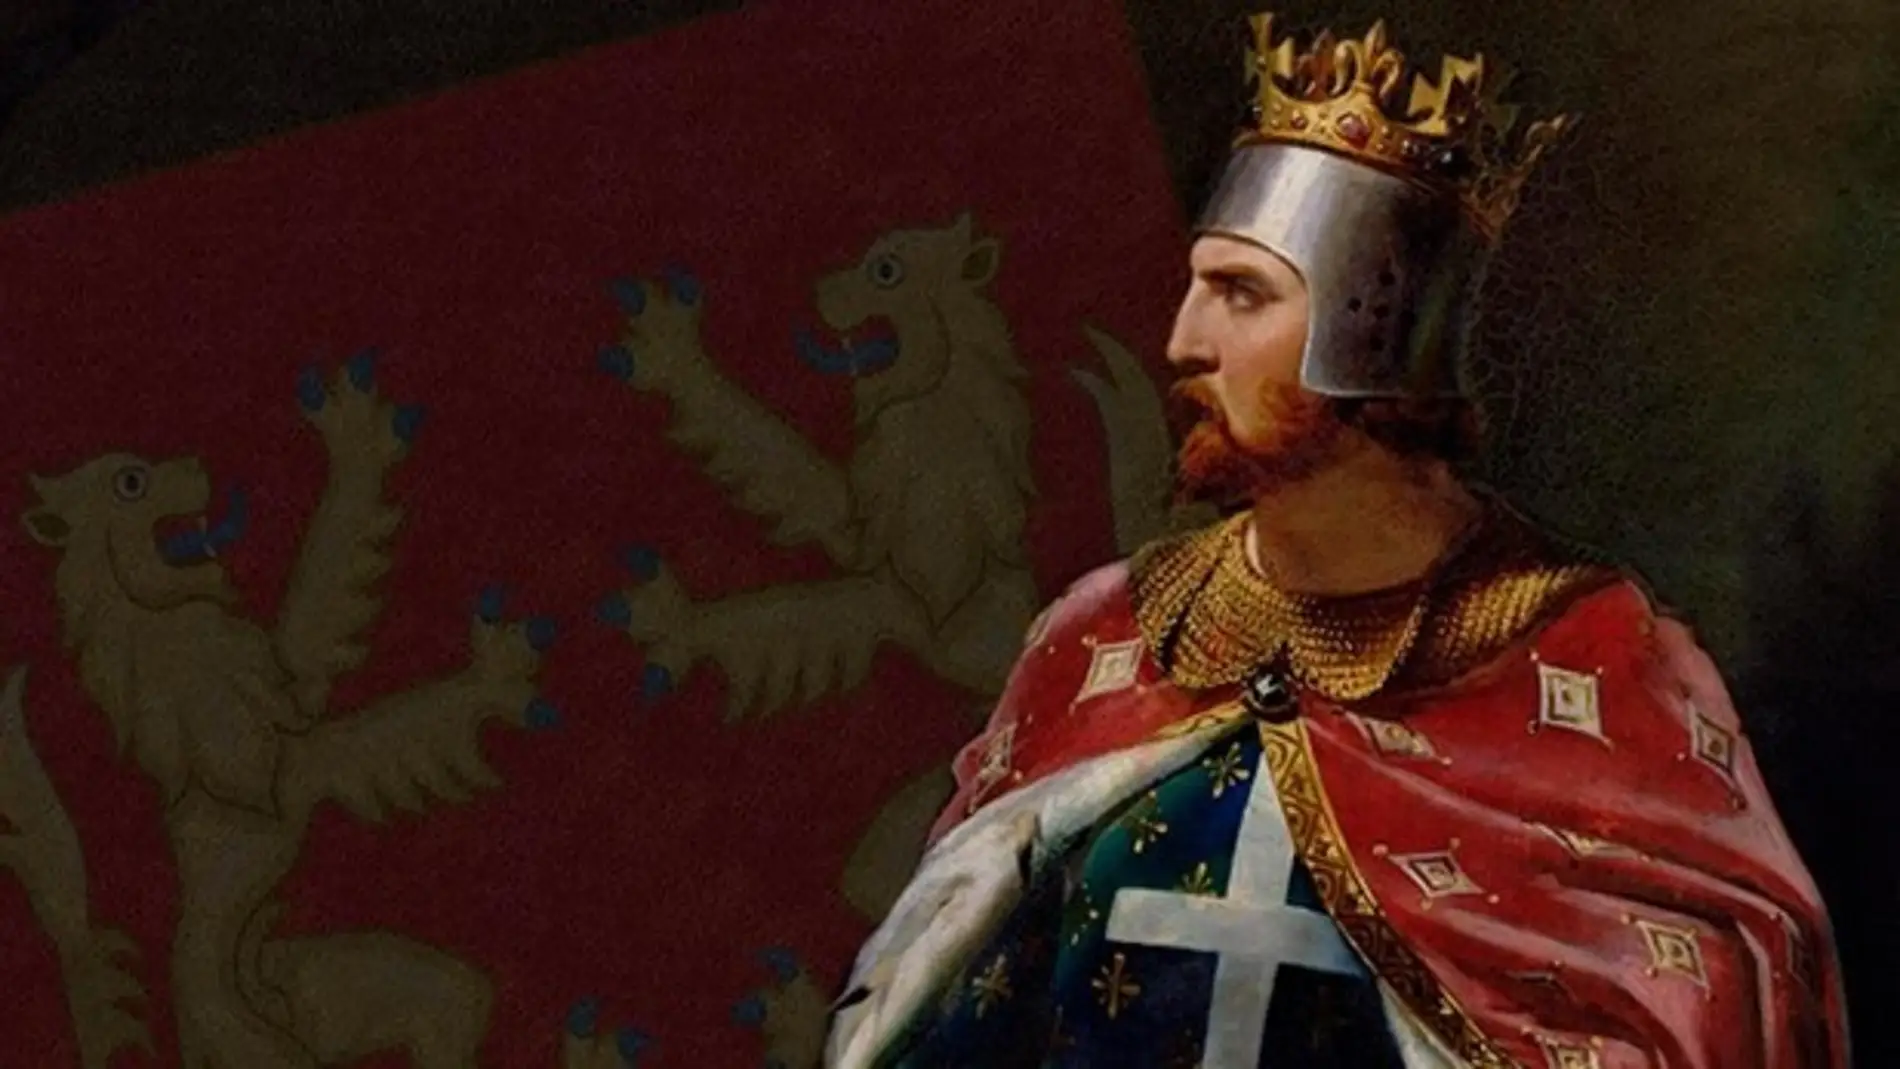 En 1189 en la abadía de Westminster, Ricardo Corazón de León es coronado rey 